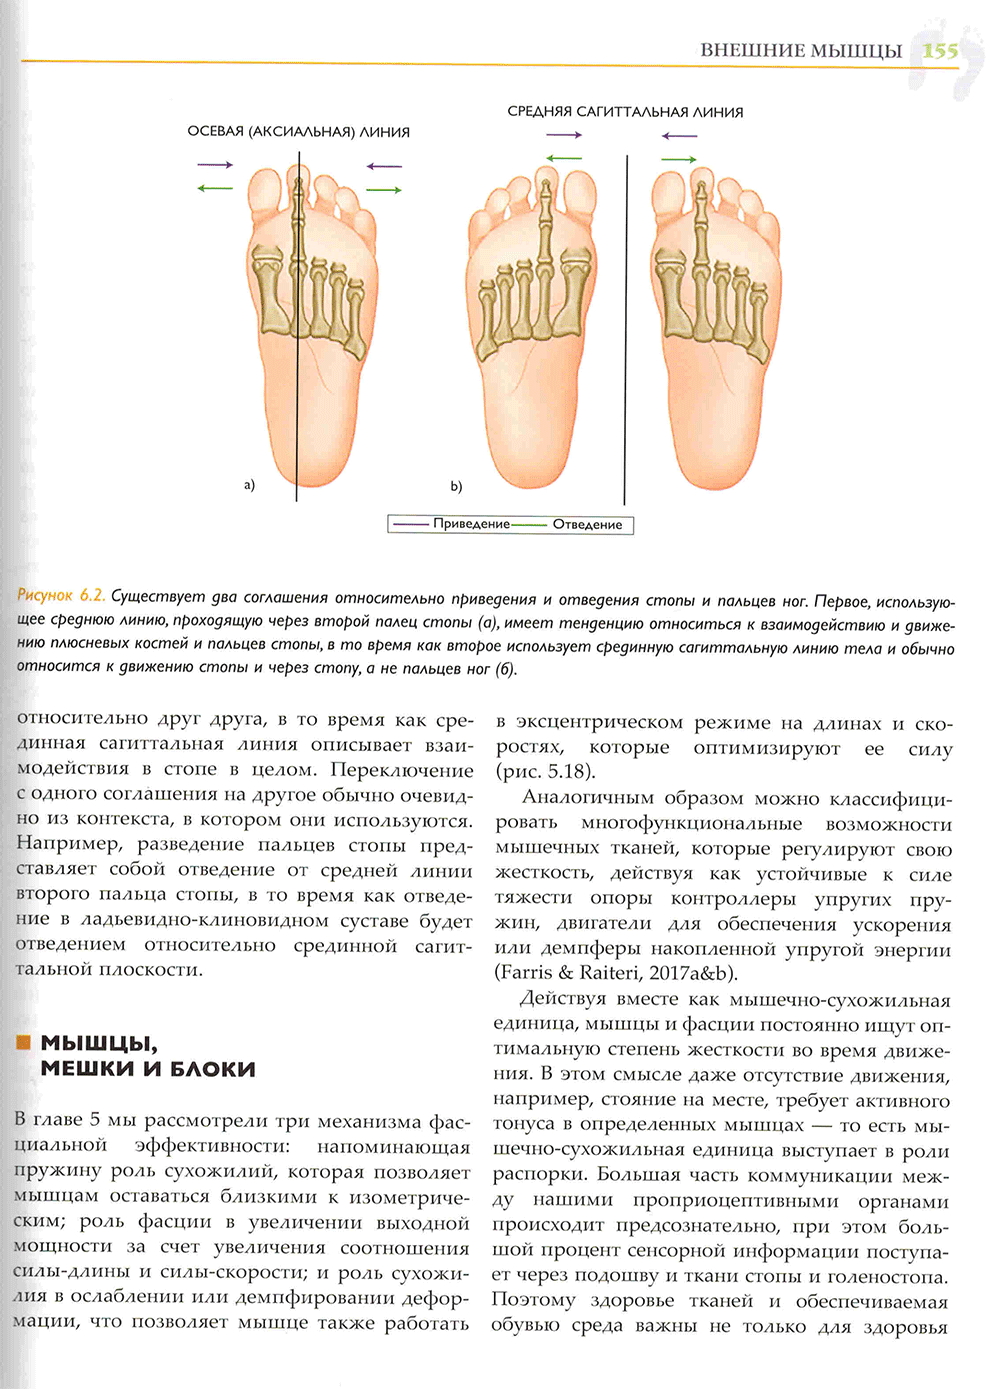 Существует два соглашения относительно приведения и отведения стопы и пальцев ног.